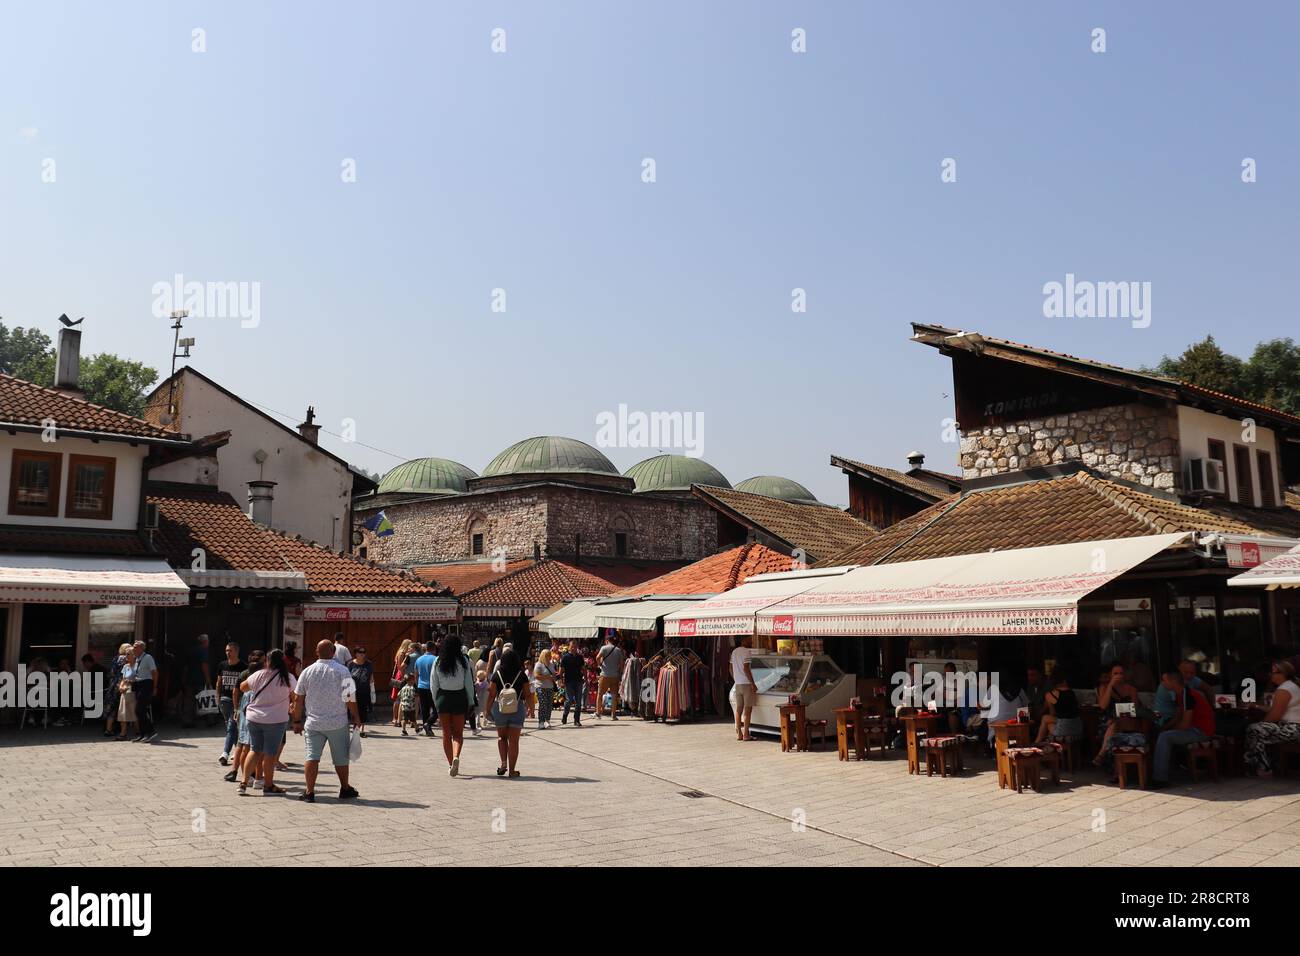 Le bellezze della città di Sarajevo e le influenze di culture diverse si riflettono nell'architettura della città. Foto Stock